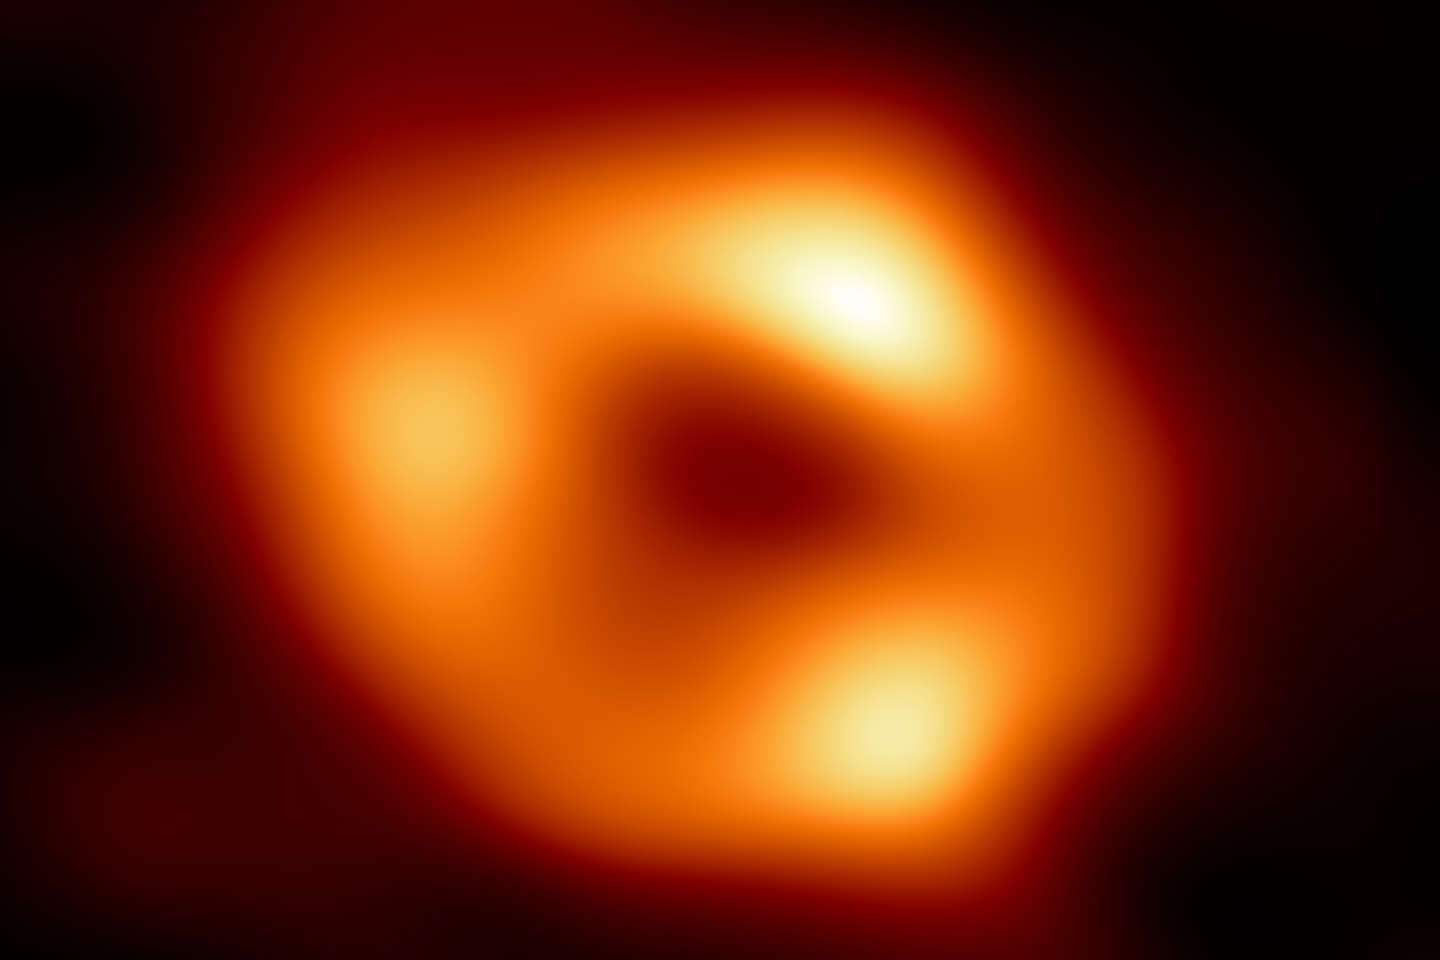 Découvrez l’image historique du trou noir central de notre galaxie